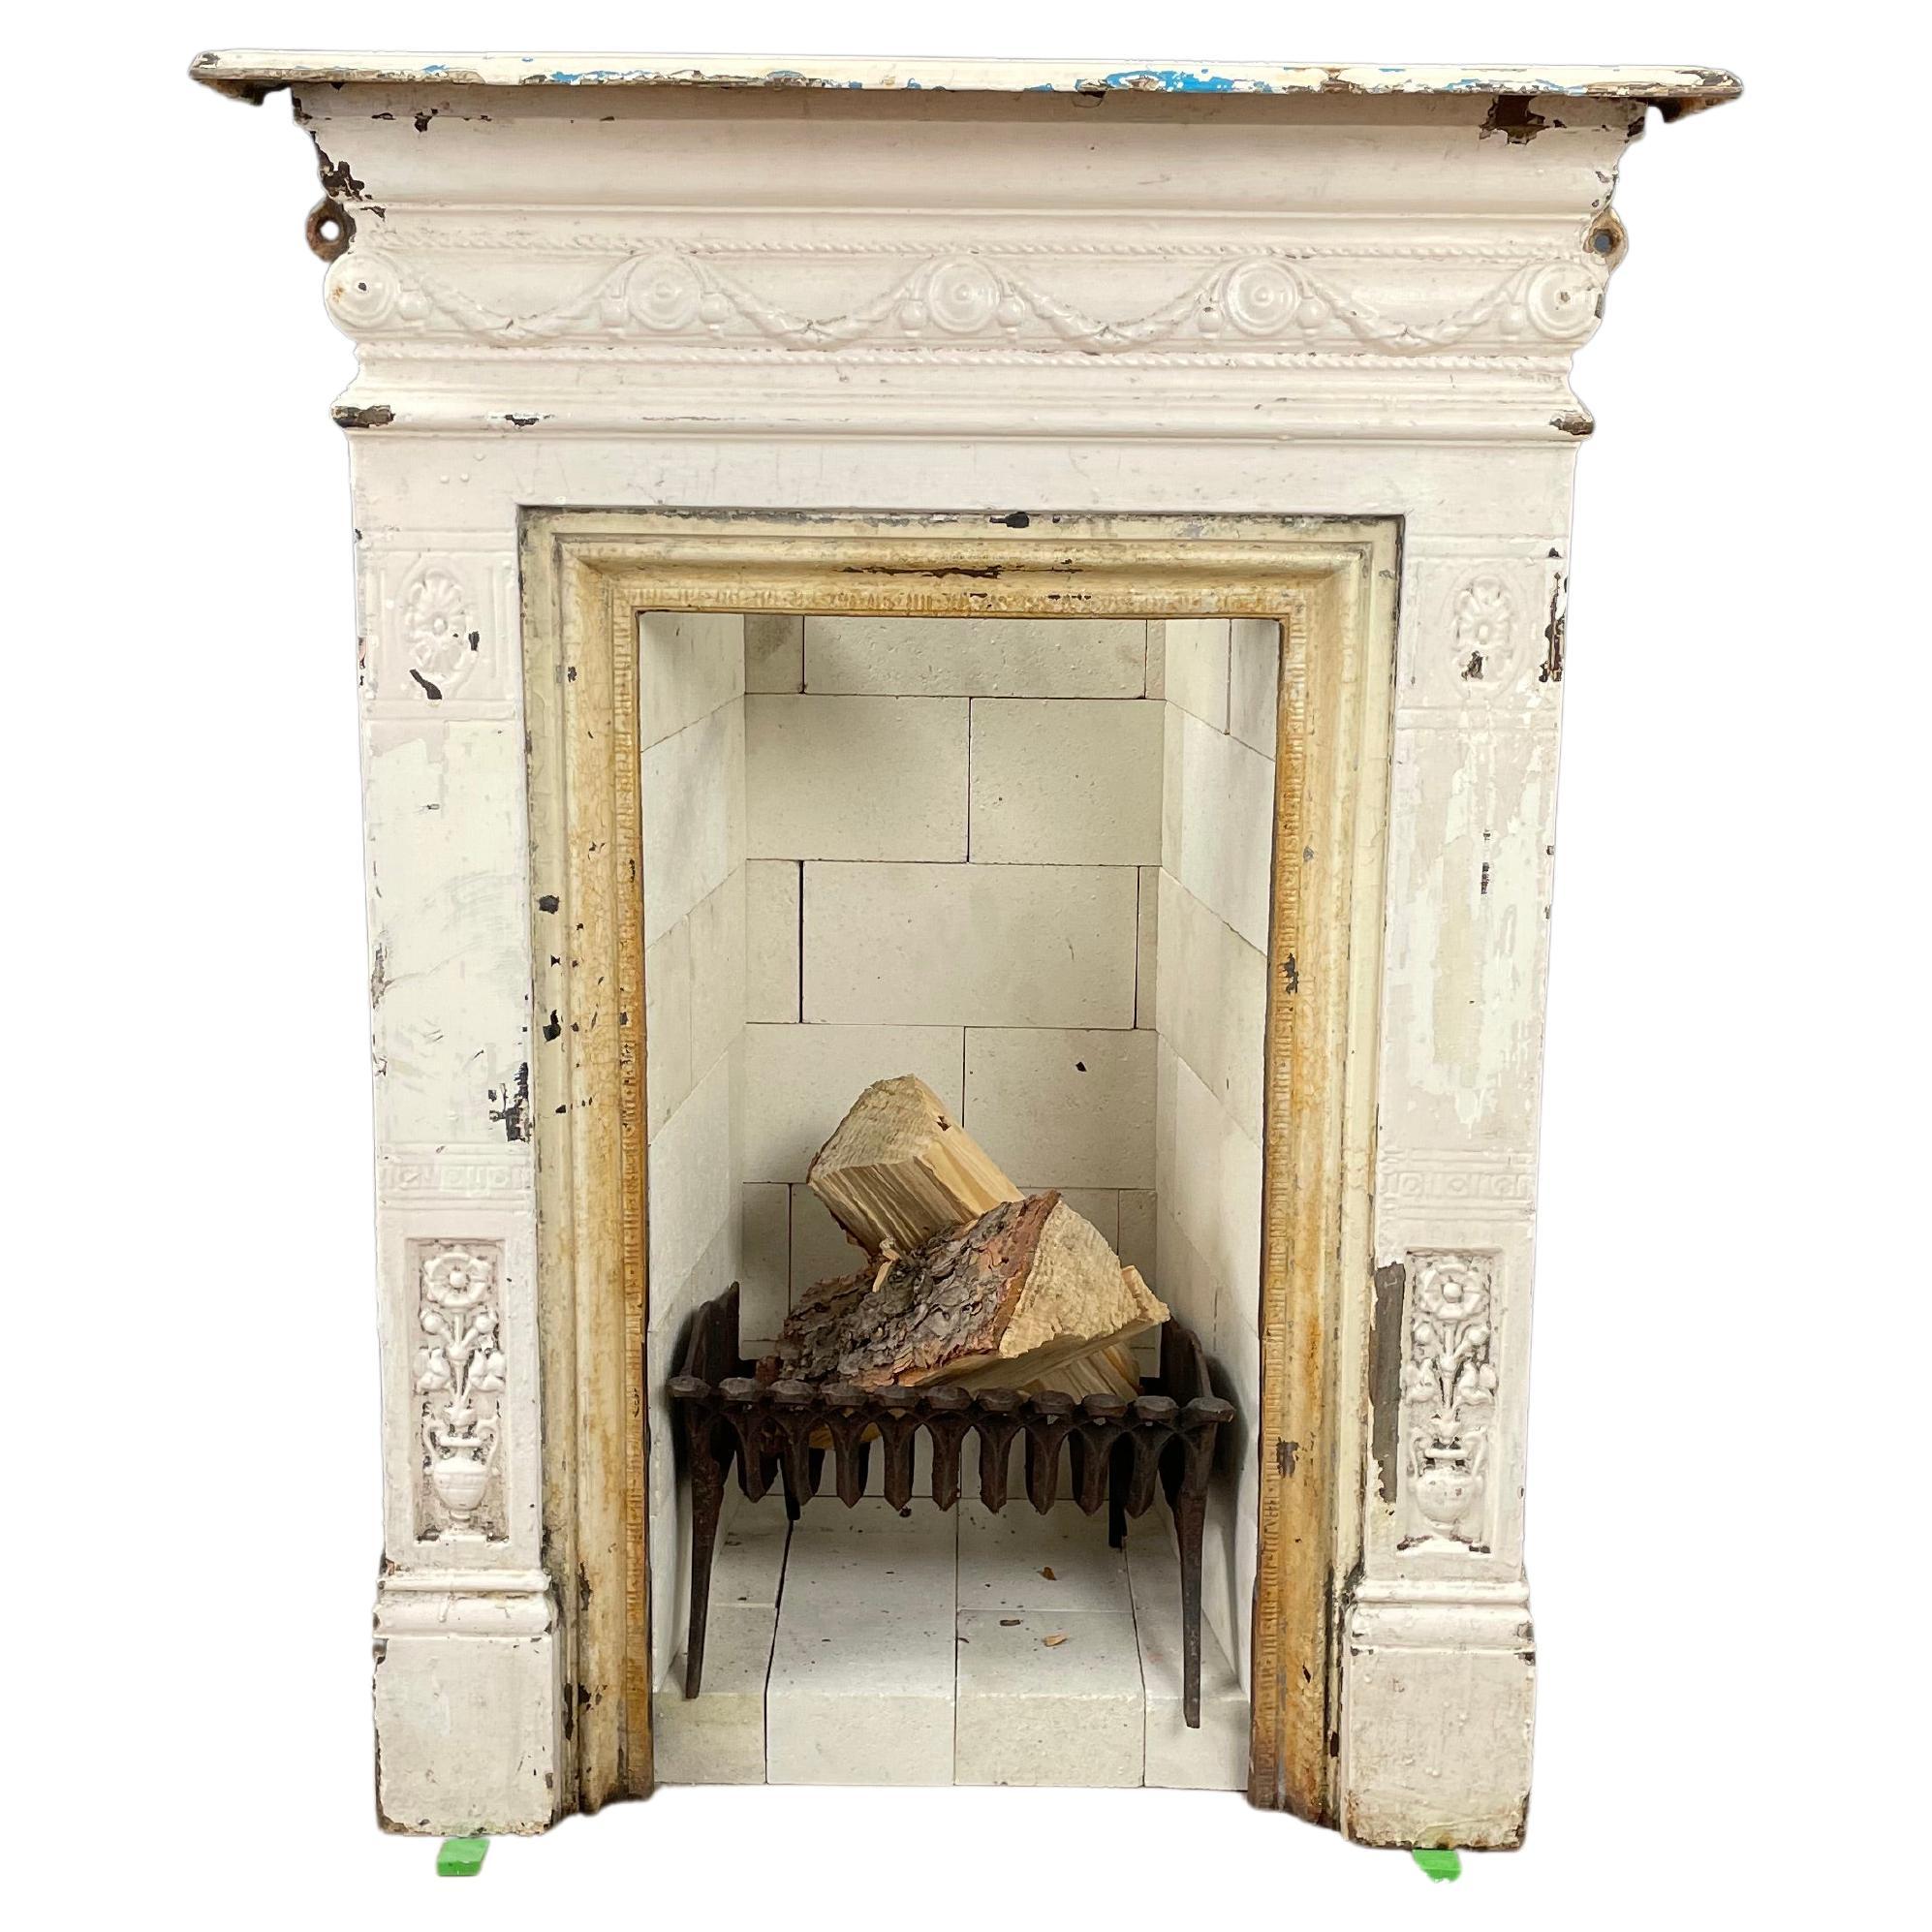 English Antique Cast Iron Fireplace Original Patina Including Refractory Bricks